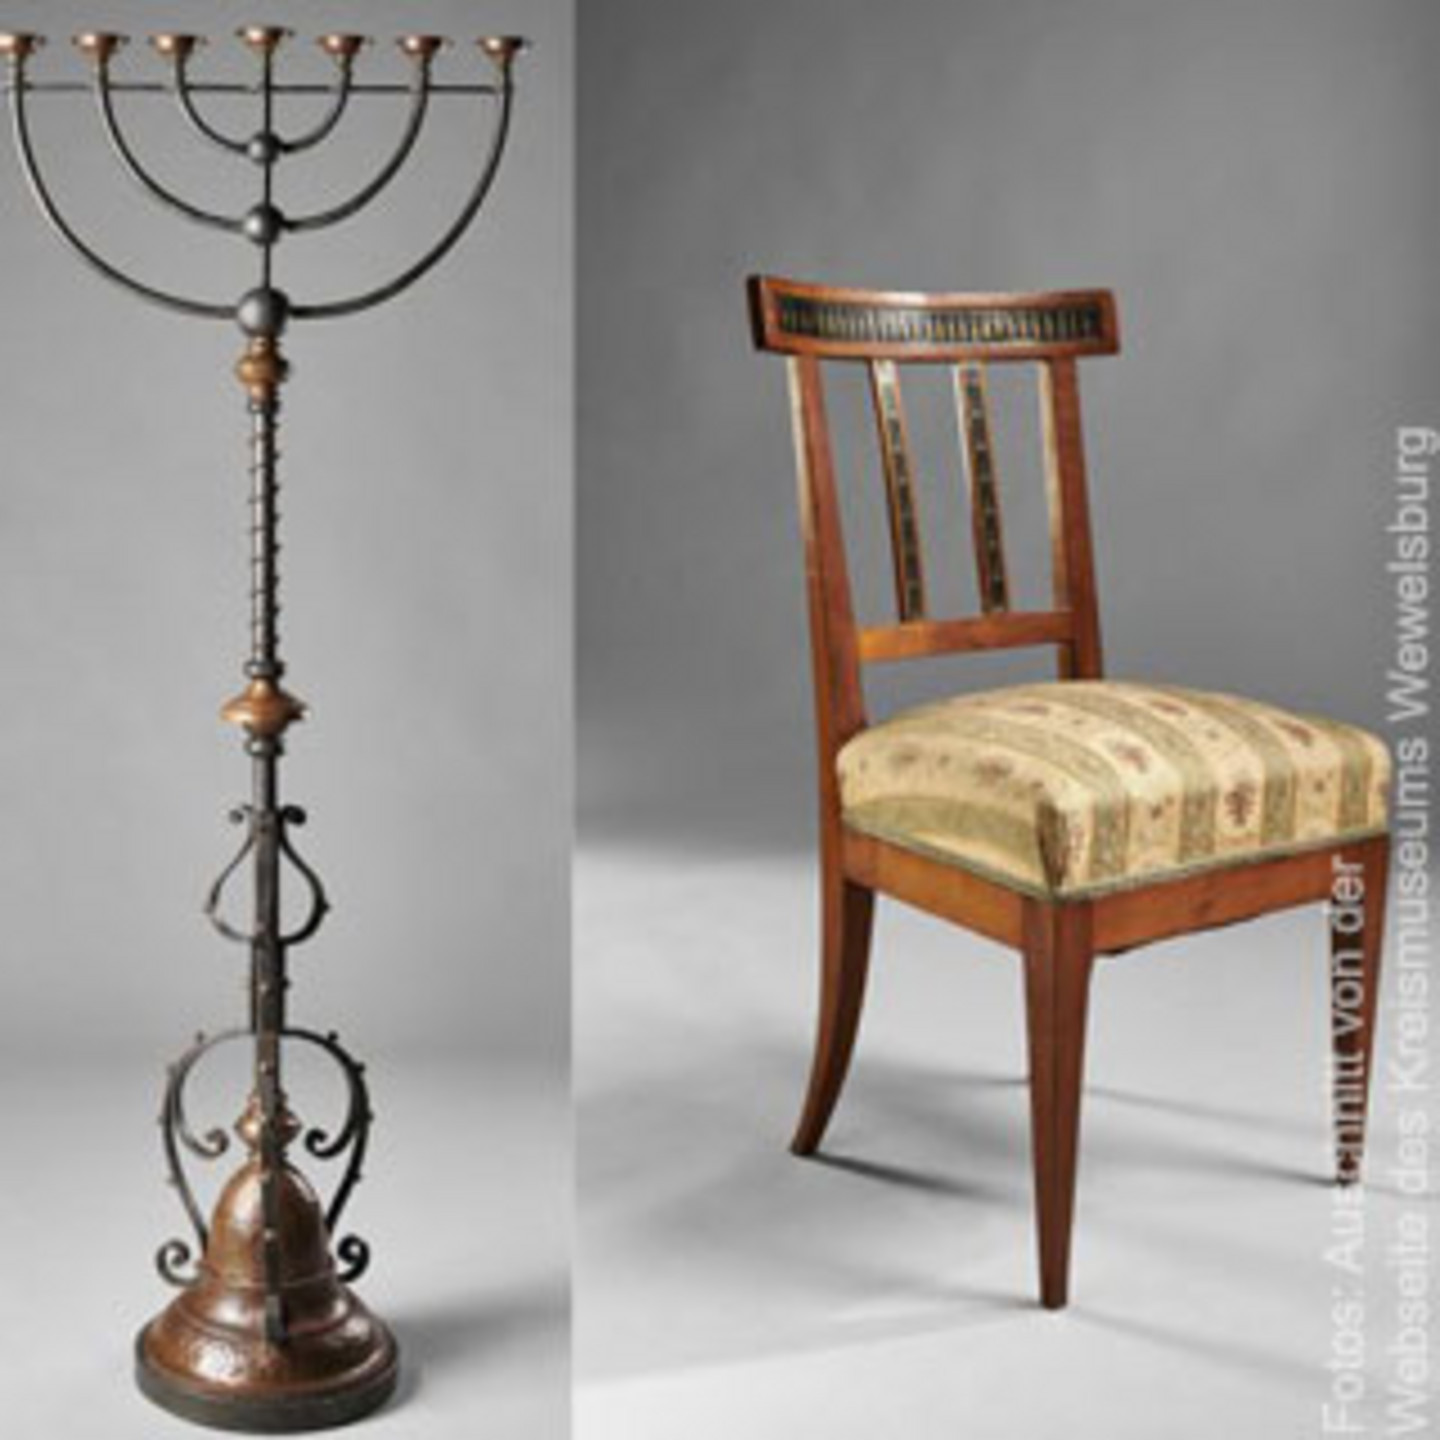 Foto eines historischen Kerzenhalters und eines historischen Stuhls.